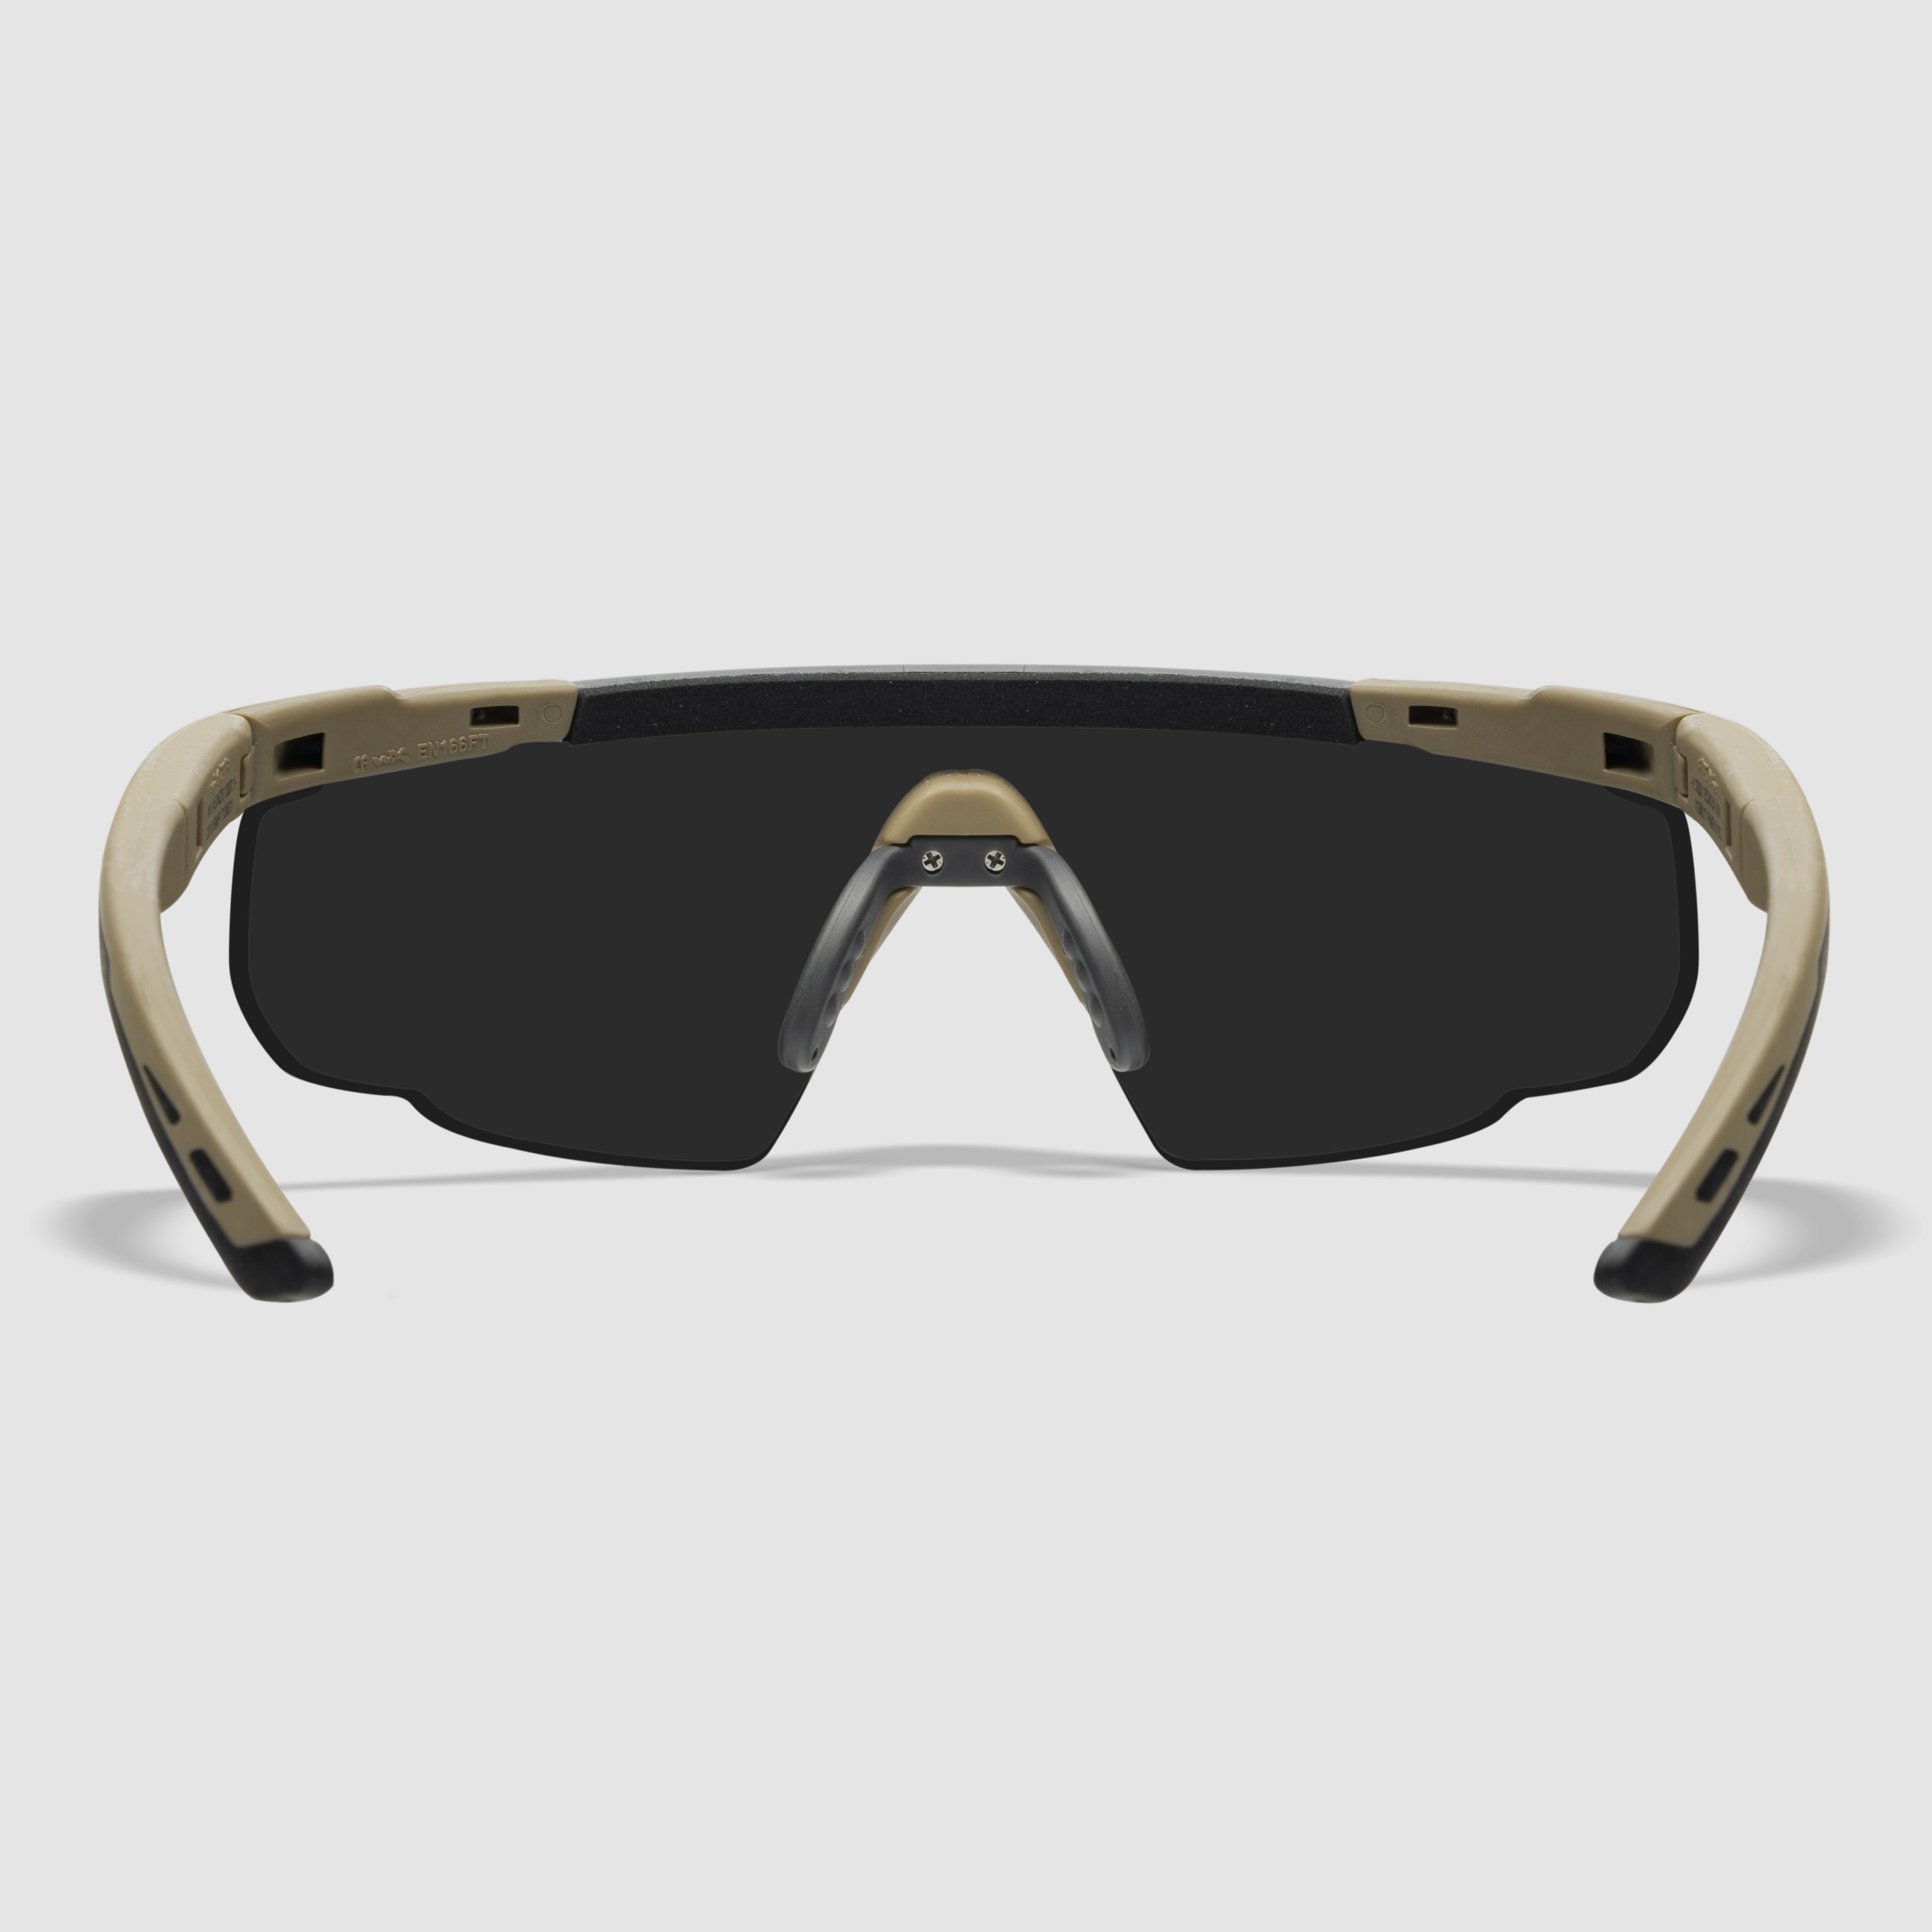 WX SABER Advanced Brille mit 3 Wechselgläsern, Gestellfarbe Matt Tarnfarbe